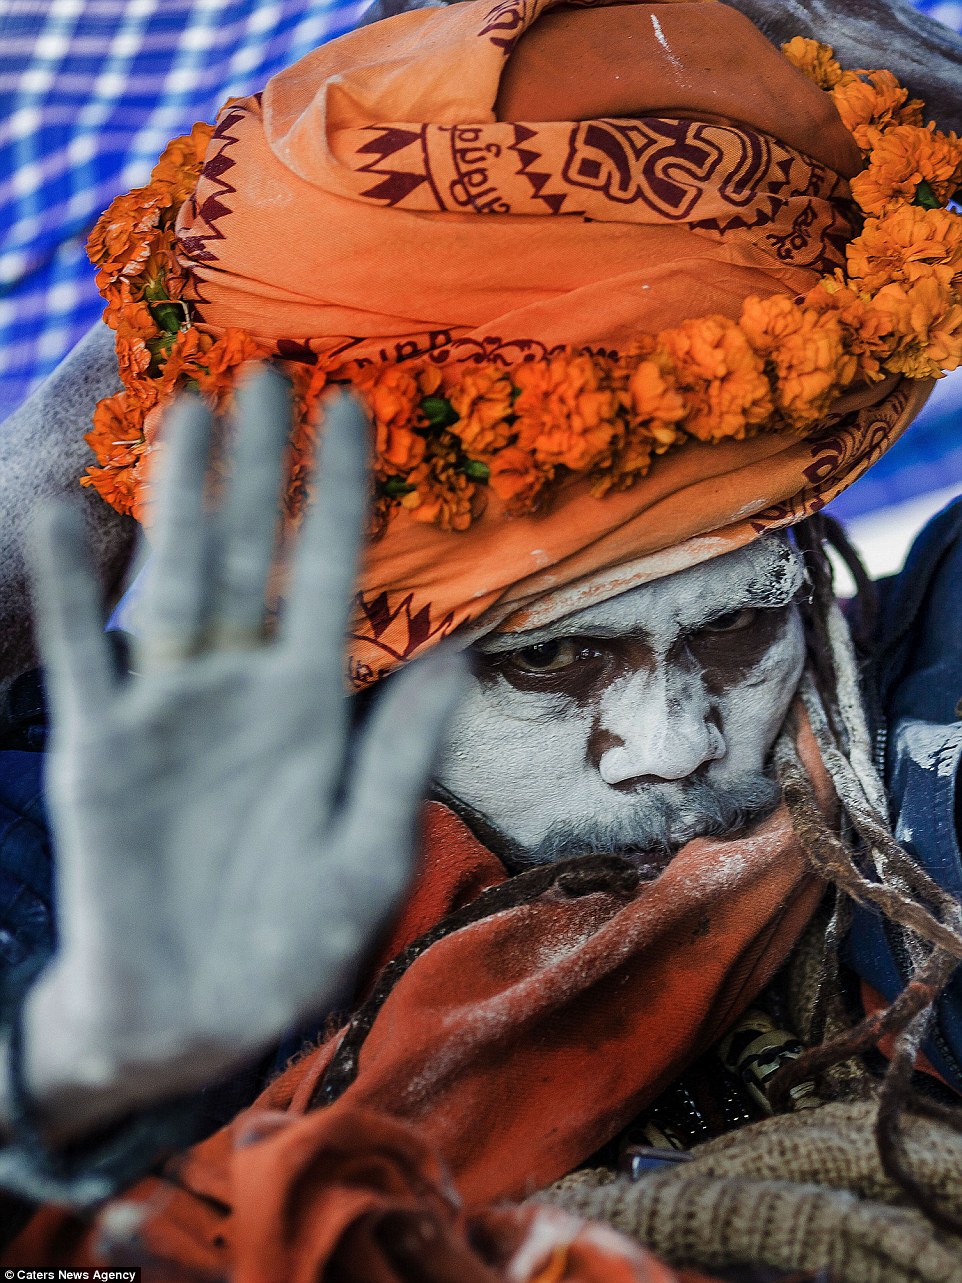 Монахи-людоеды Индии: как живут почитатели самой страшной секты? ФОТО